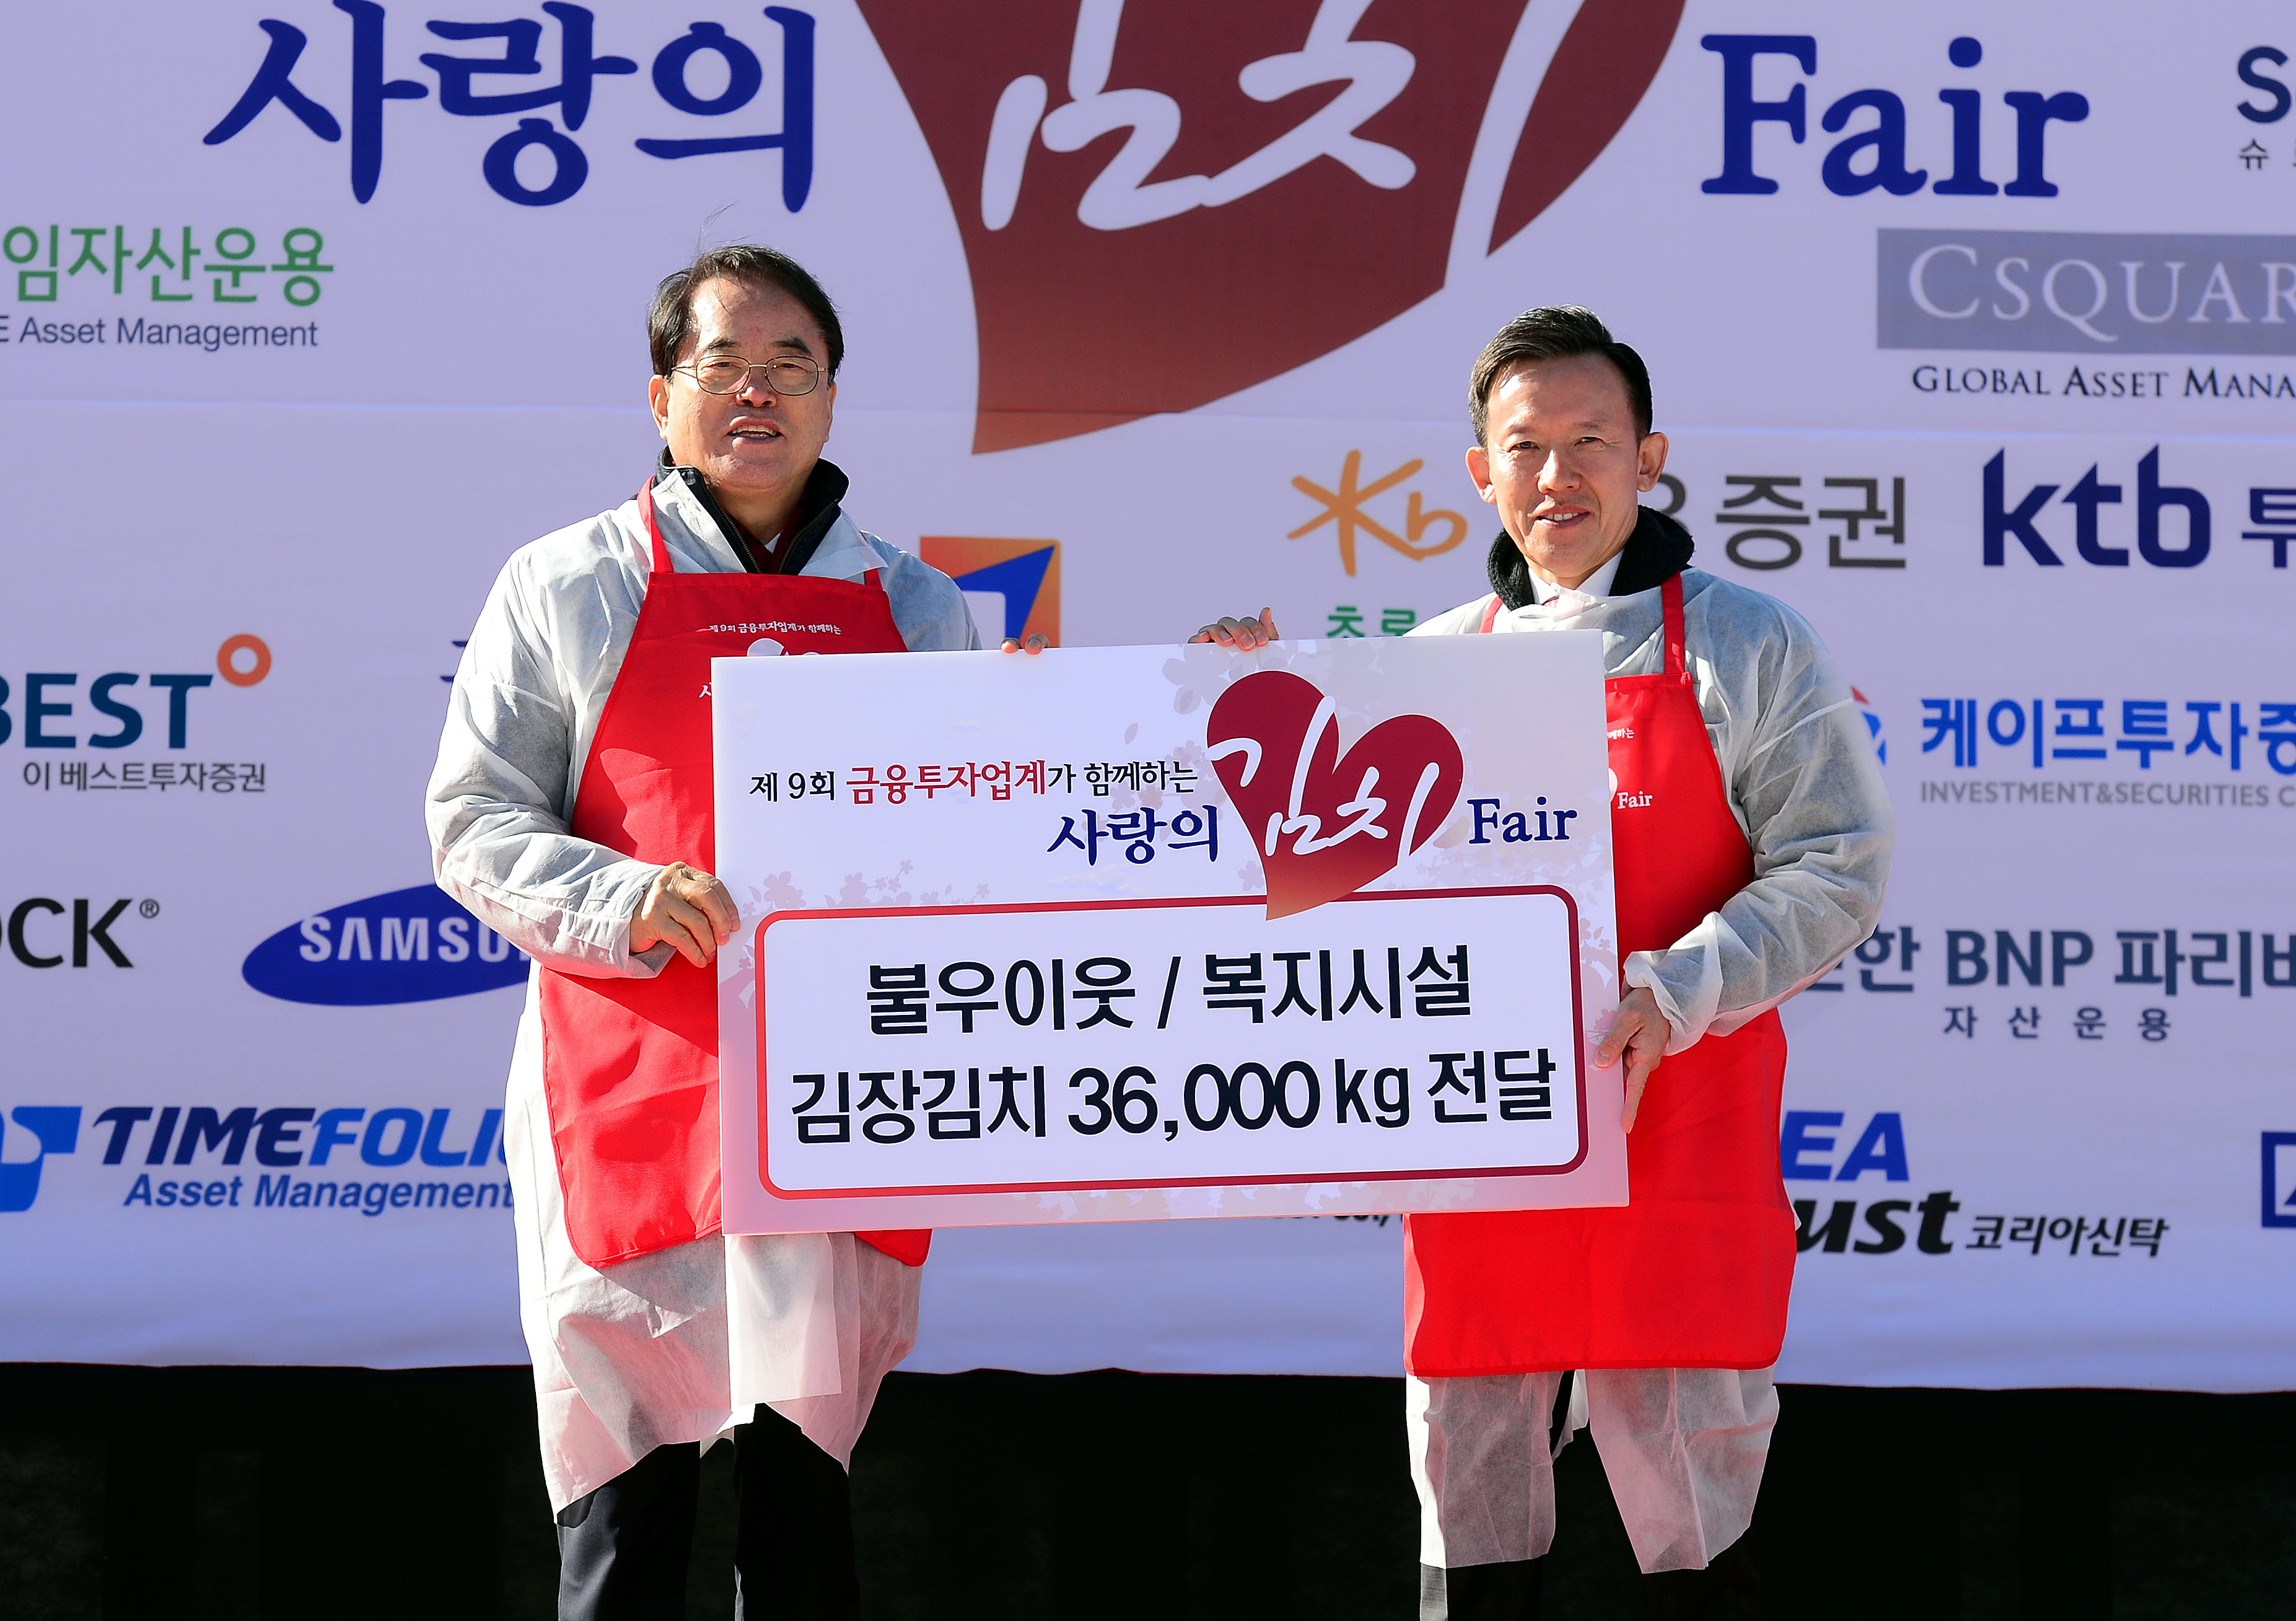 금융투자업계, 제9회 '사랑의 김치 fair' 나눔 행사 펼쳐 1